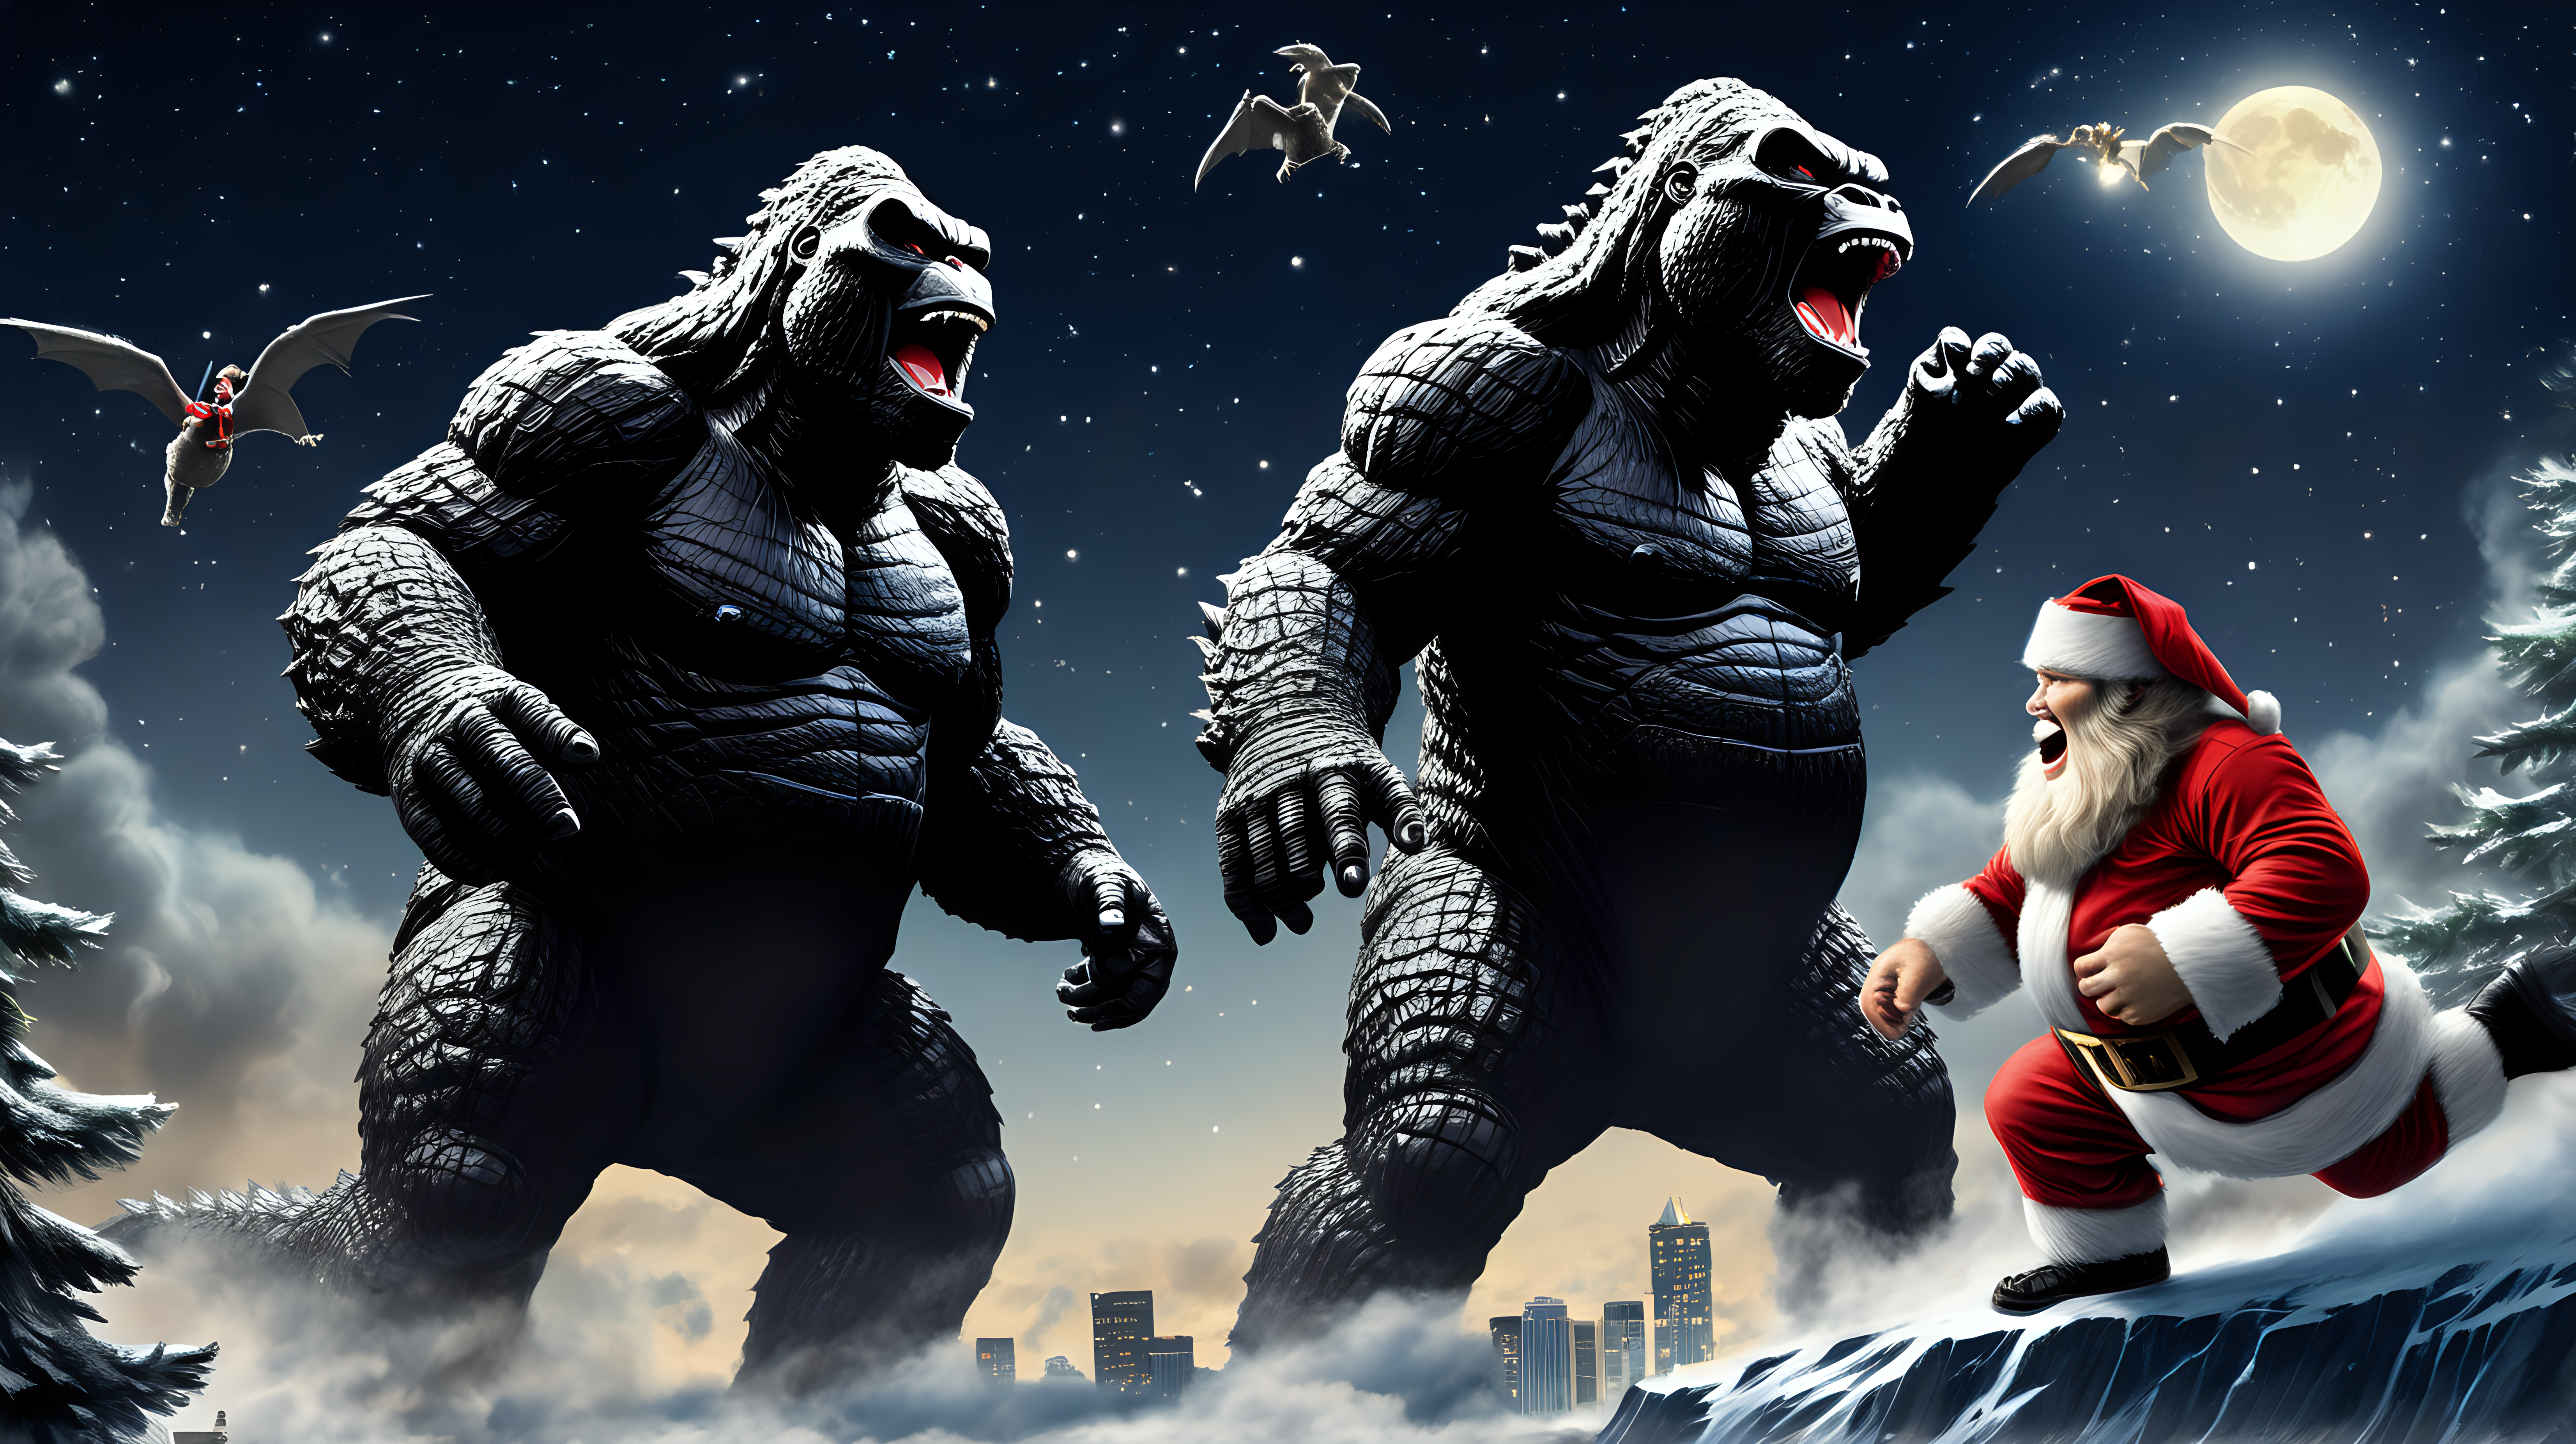 Godzilla and King Kong chasing Santa in the